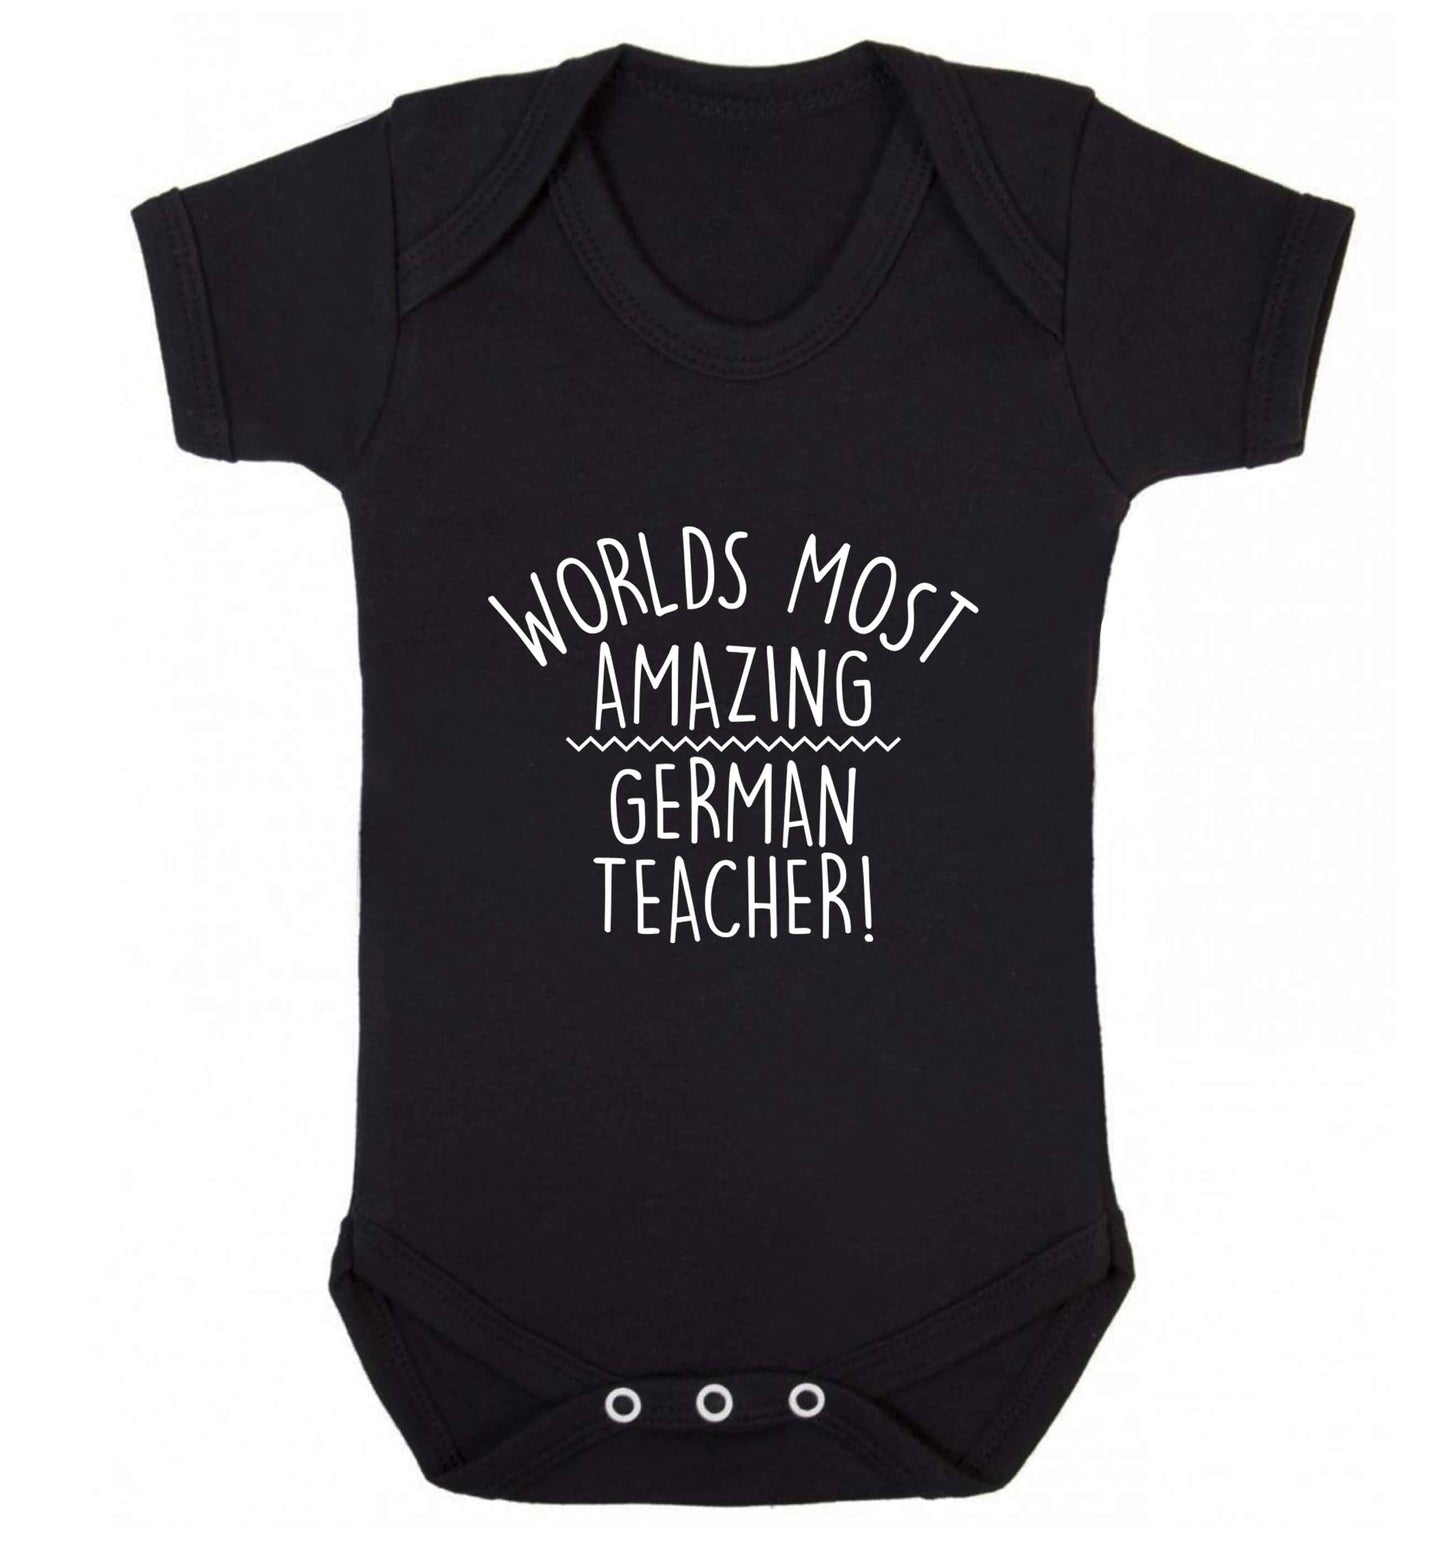 Worlds most amazing German teacher baby vest black 18-24 months